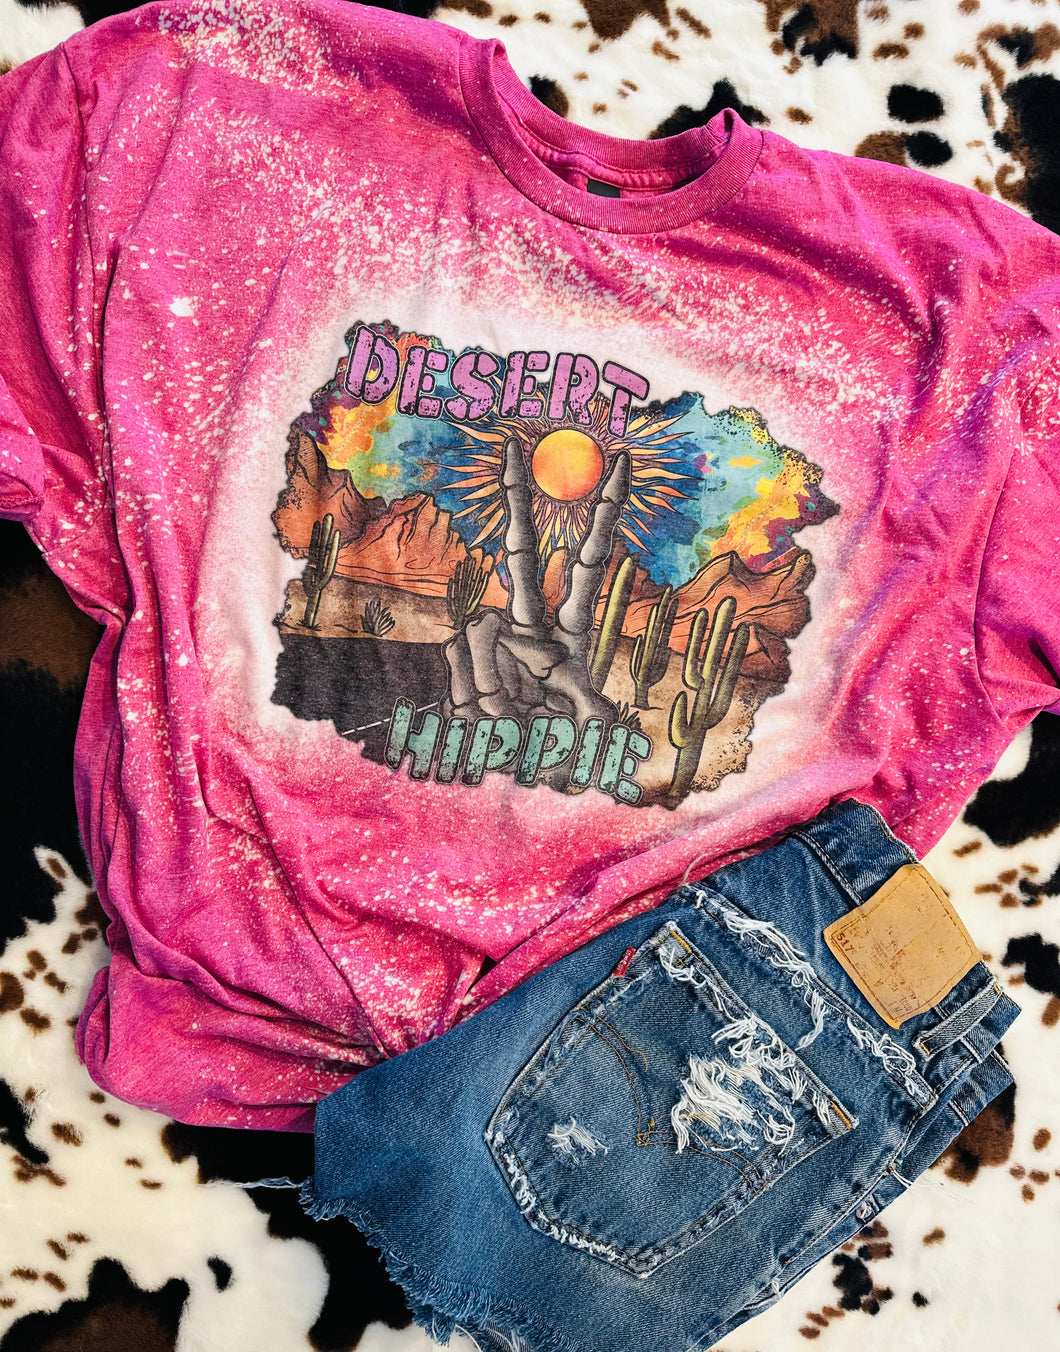 Bleached desert hippie graphic tee or sweatshirt - Mavictoria Designs Hot Press Express